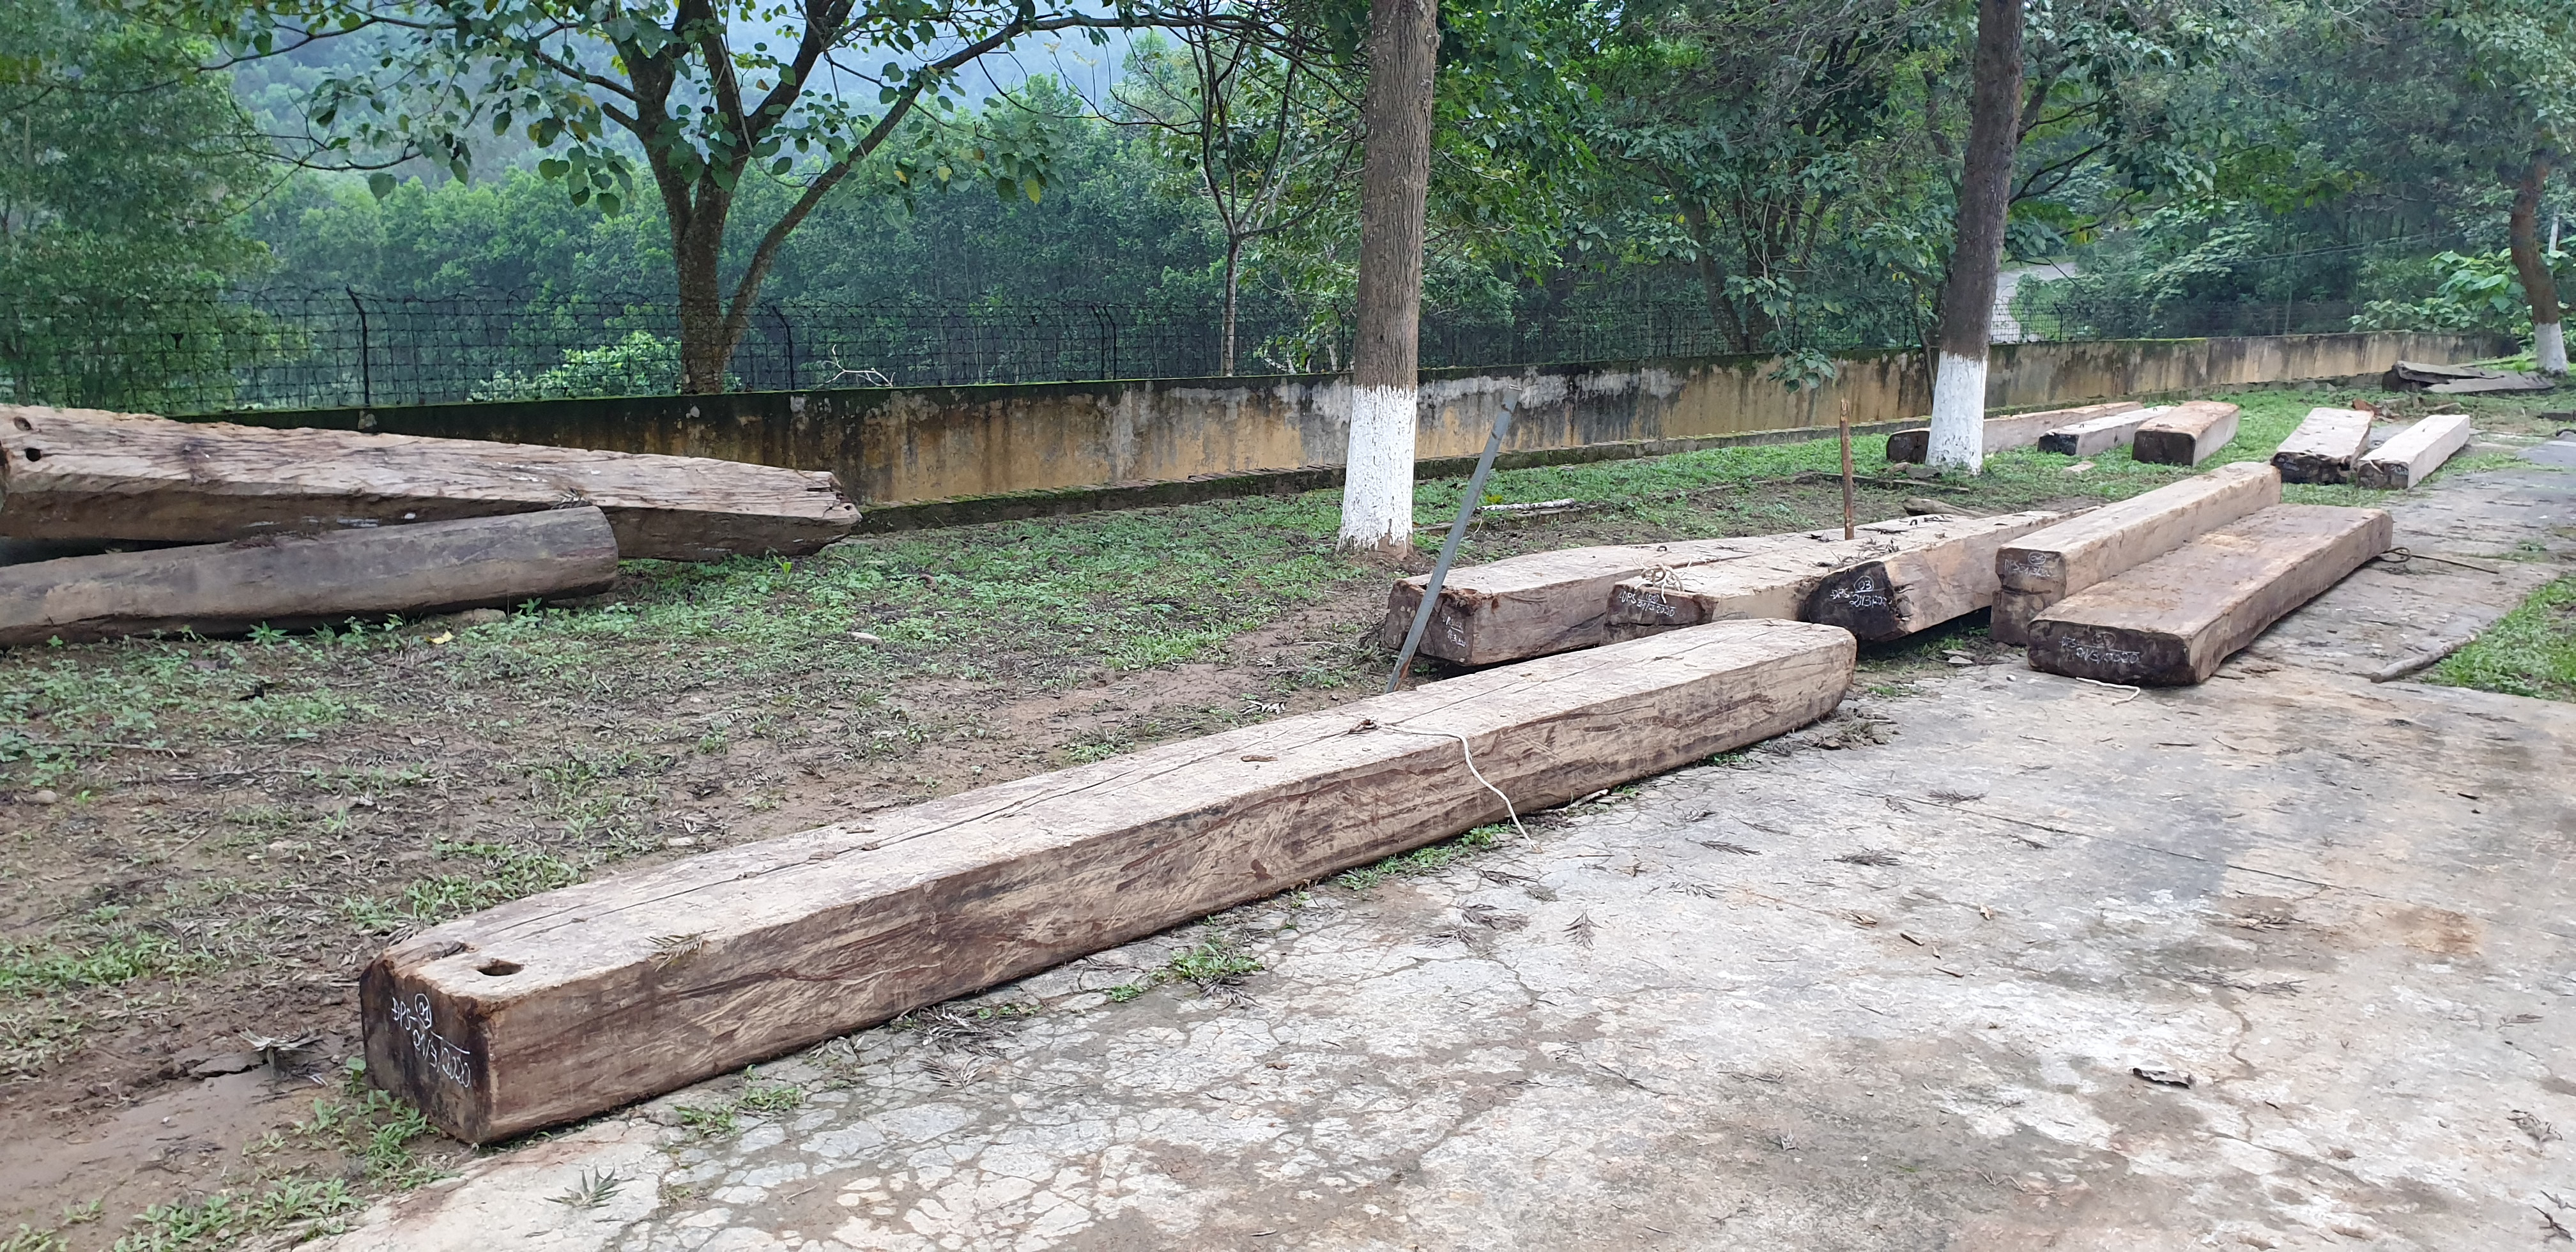 Hiện toàn bộ số gỗ trên đã được vận chuyển về Đồn Biên phòng Phúc Sơn bảo quản. Ảnh: Bùi Hồng Mạnh